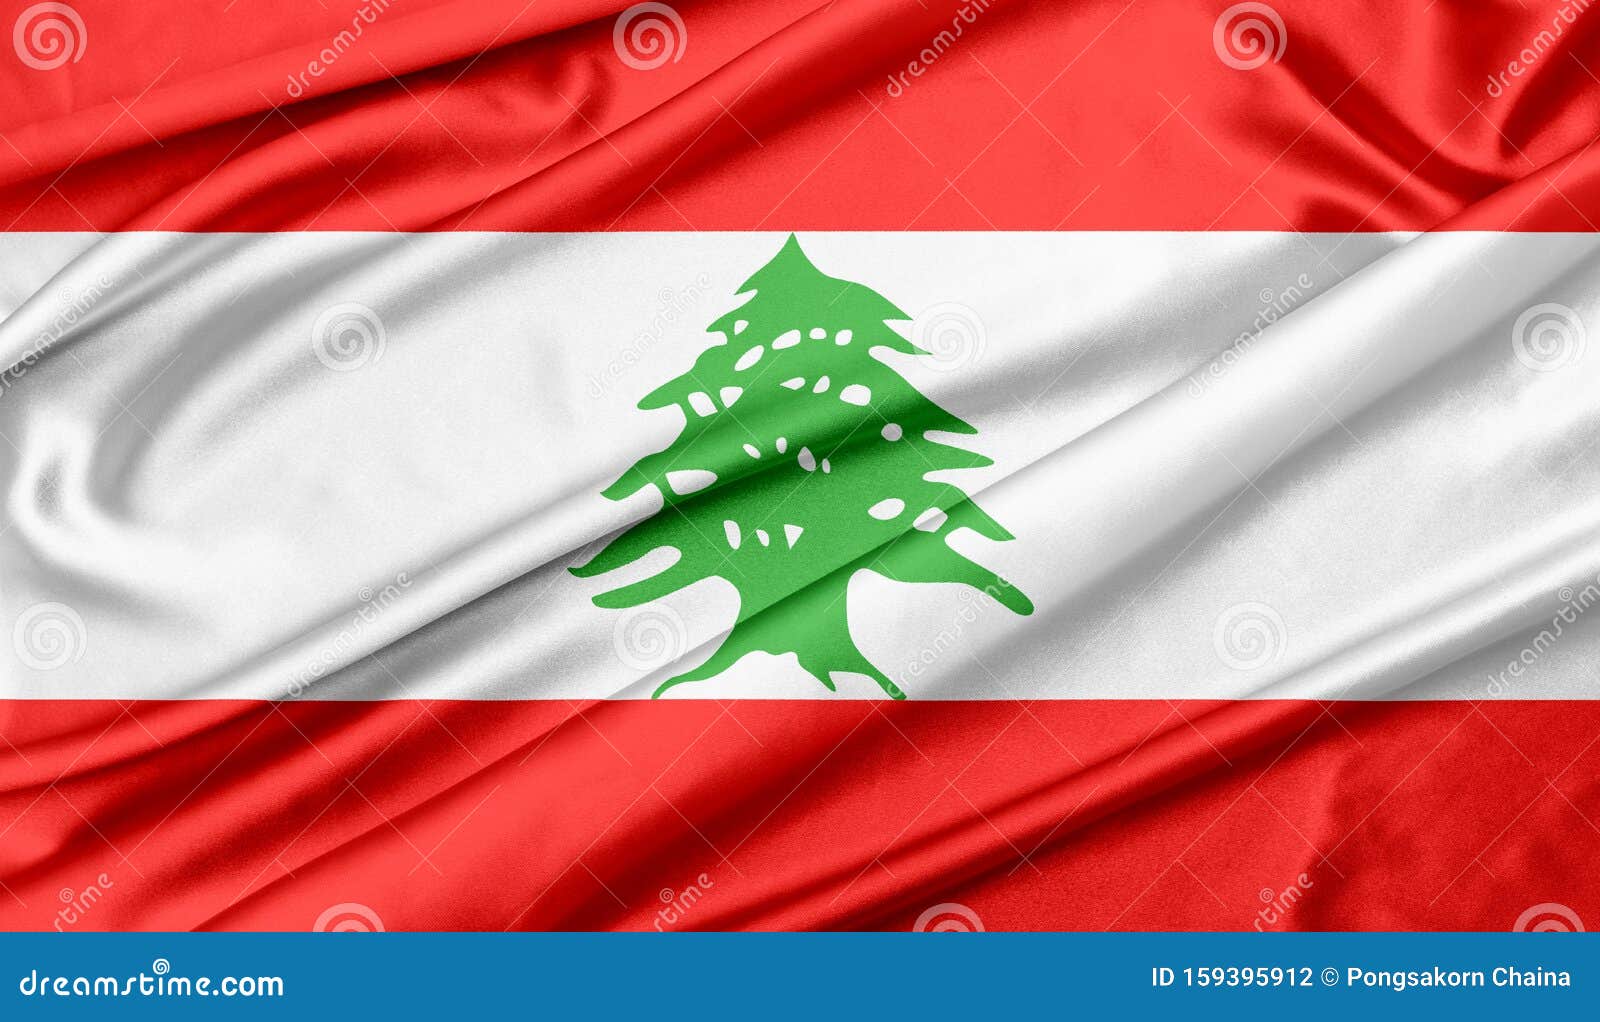 带杆子的黎巴嫩国旗圖案素材 | PNG和向量圖 | 透明背景圖片 | 免費下载 - Pngtree